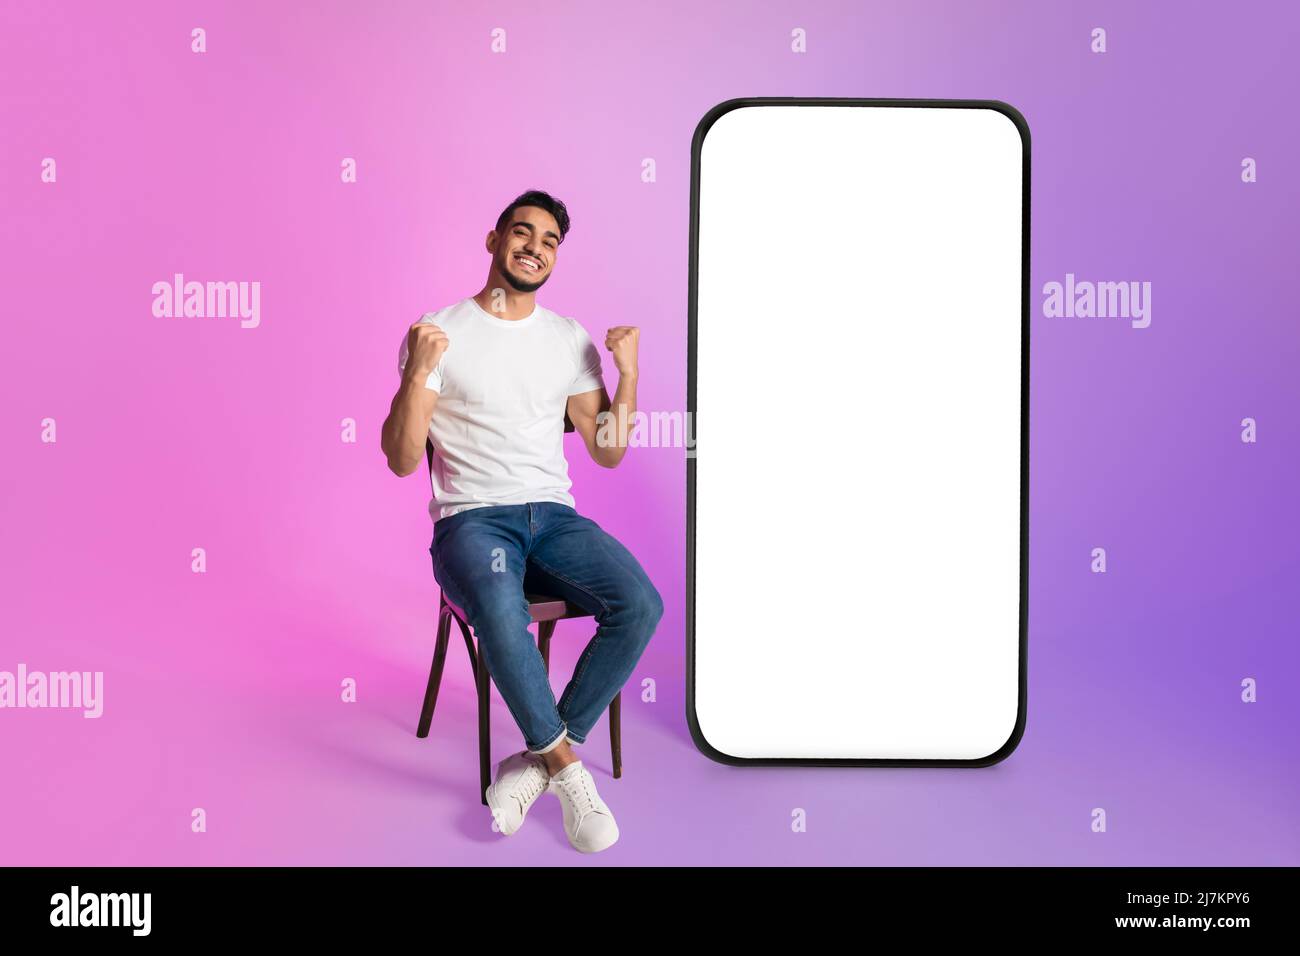 Jeune homme arabe offrant un énorme smartphone avec mockup, gesturant OUI, publicité de magasin Web, casino ou application de loterie Banque D'Images